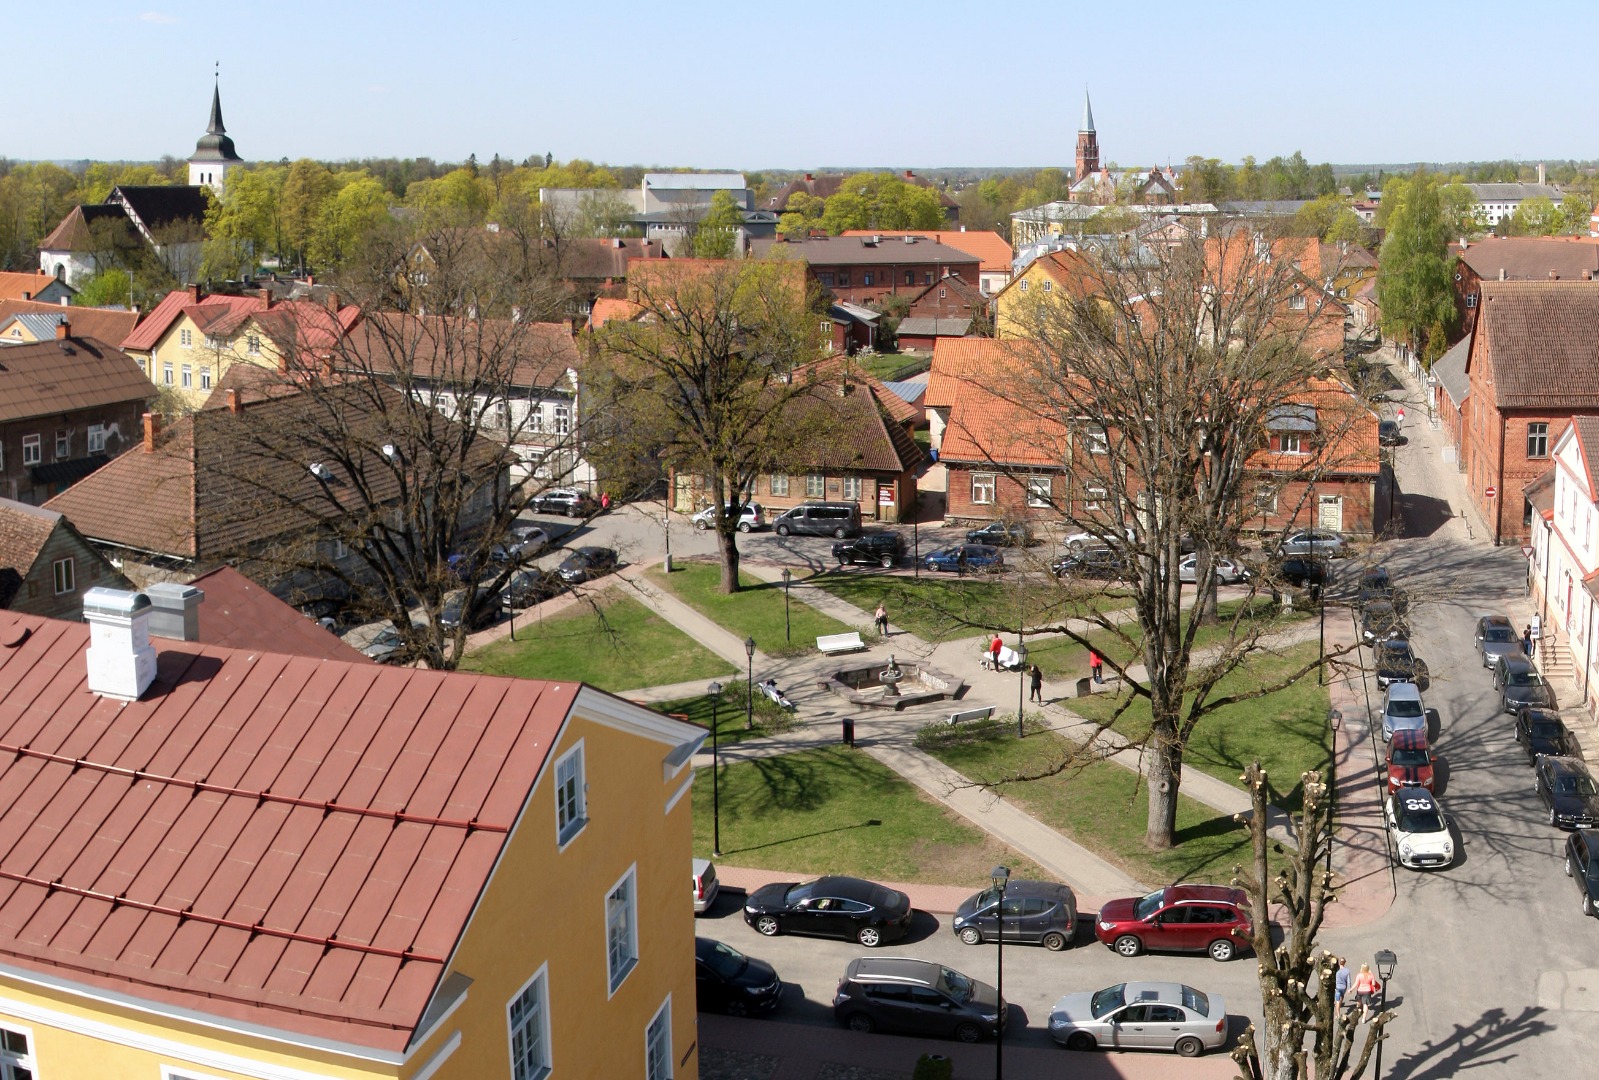 Lossi tänava vaade Viljandis, õhuvaade rephoto